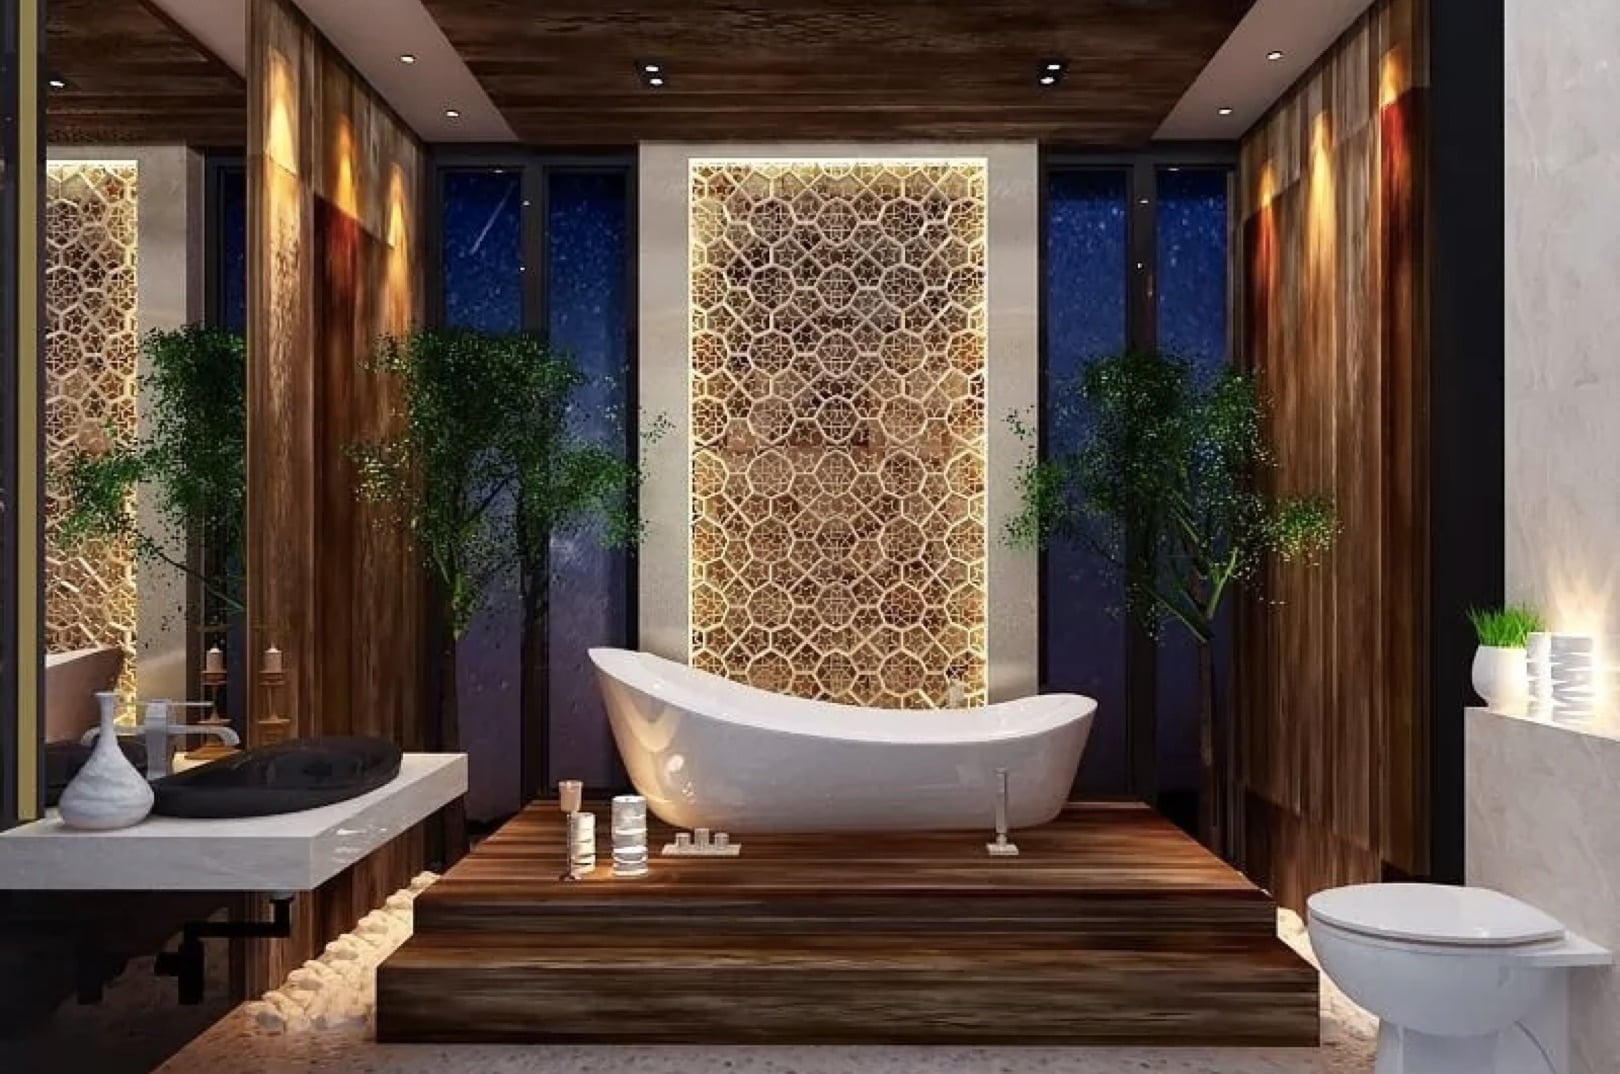 88 Inspirasi Desain Kamar Mandi Minimalis Bathup Paling Populer di Dunia